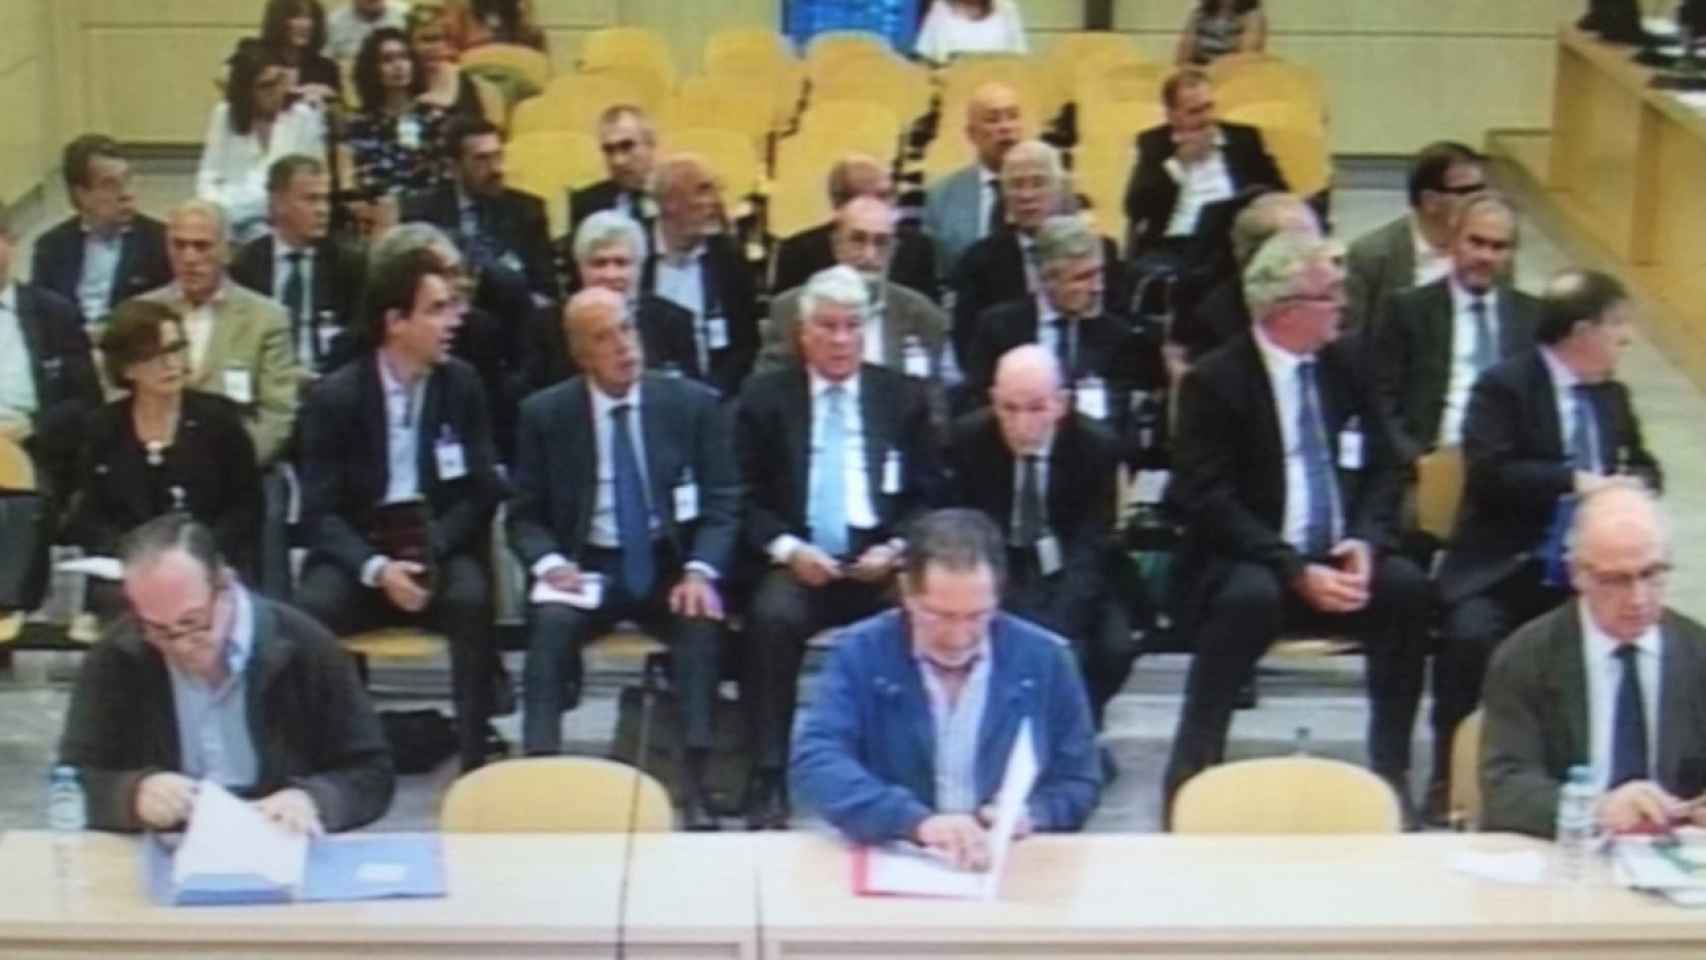 Banquillo del juicio por la salida a Bolsa de Bankia, imagen tomada en la sesión celebrada el 4 de septiembre de 2019.